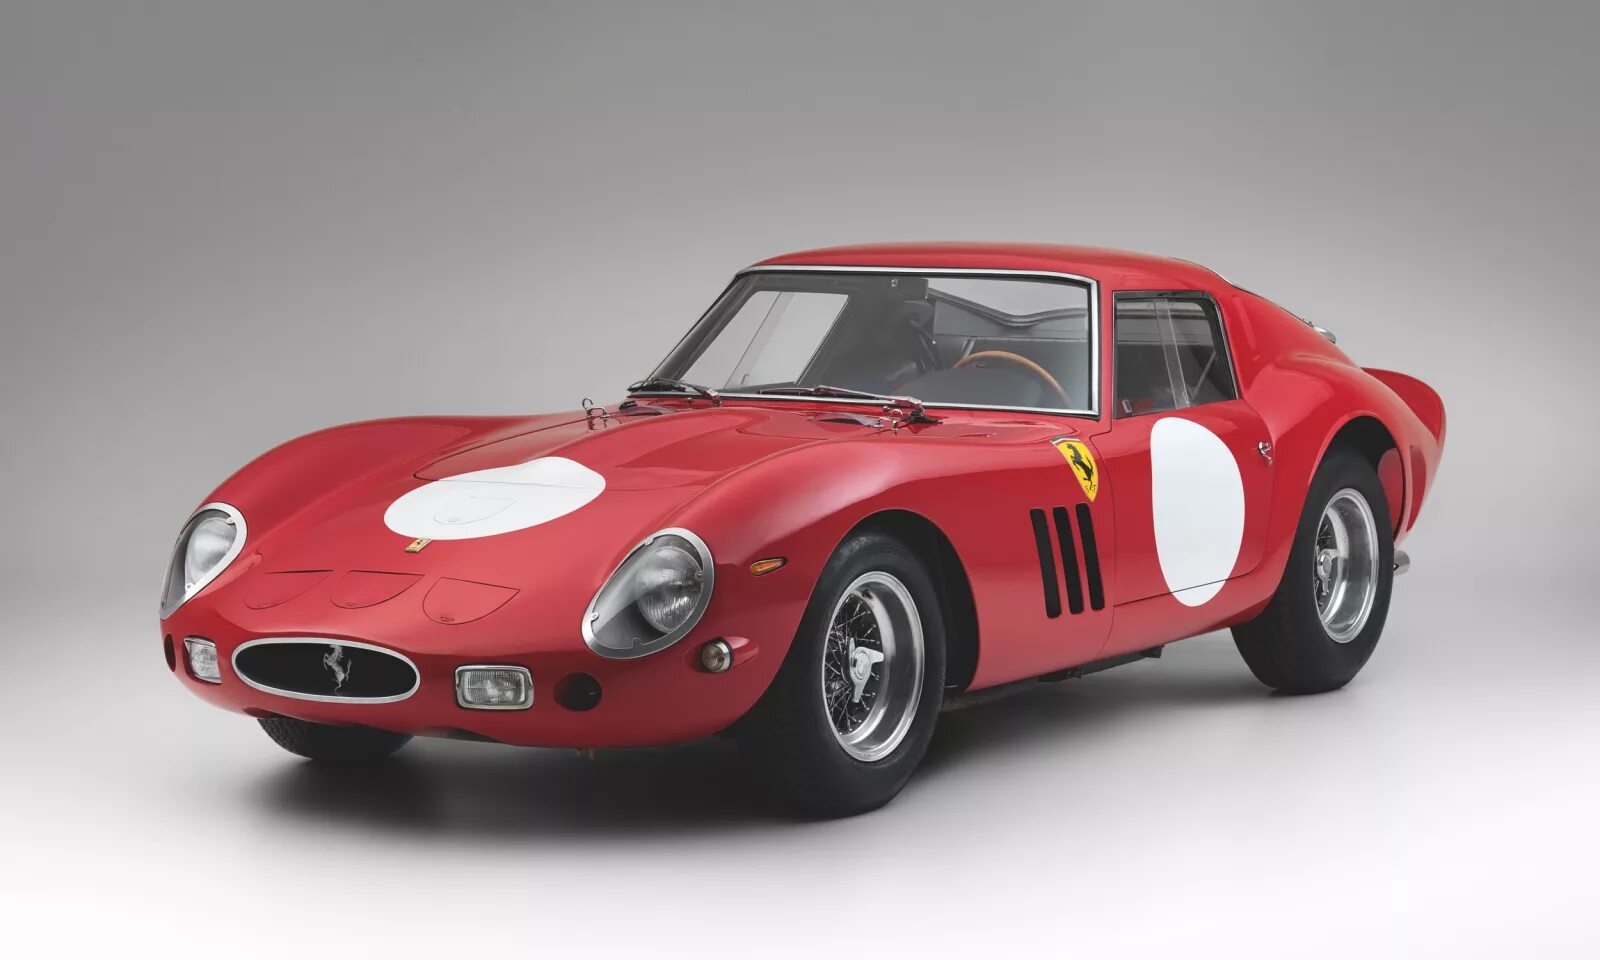 Ferrari 250 gto 1962. Ferrari 250 GTO. Ferrari 250 GTO 1963. Ferrari GTO 250 19.